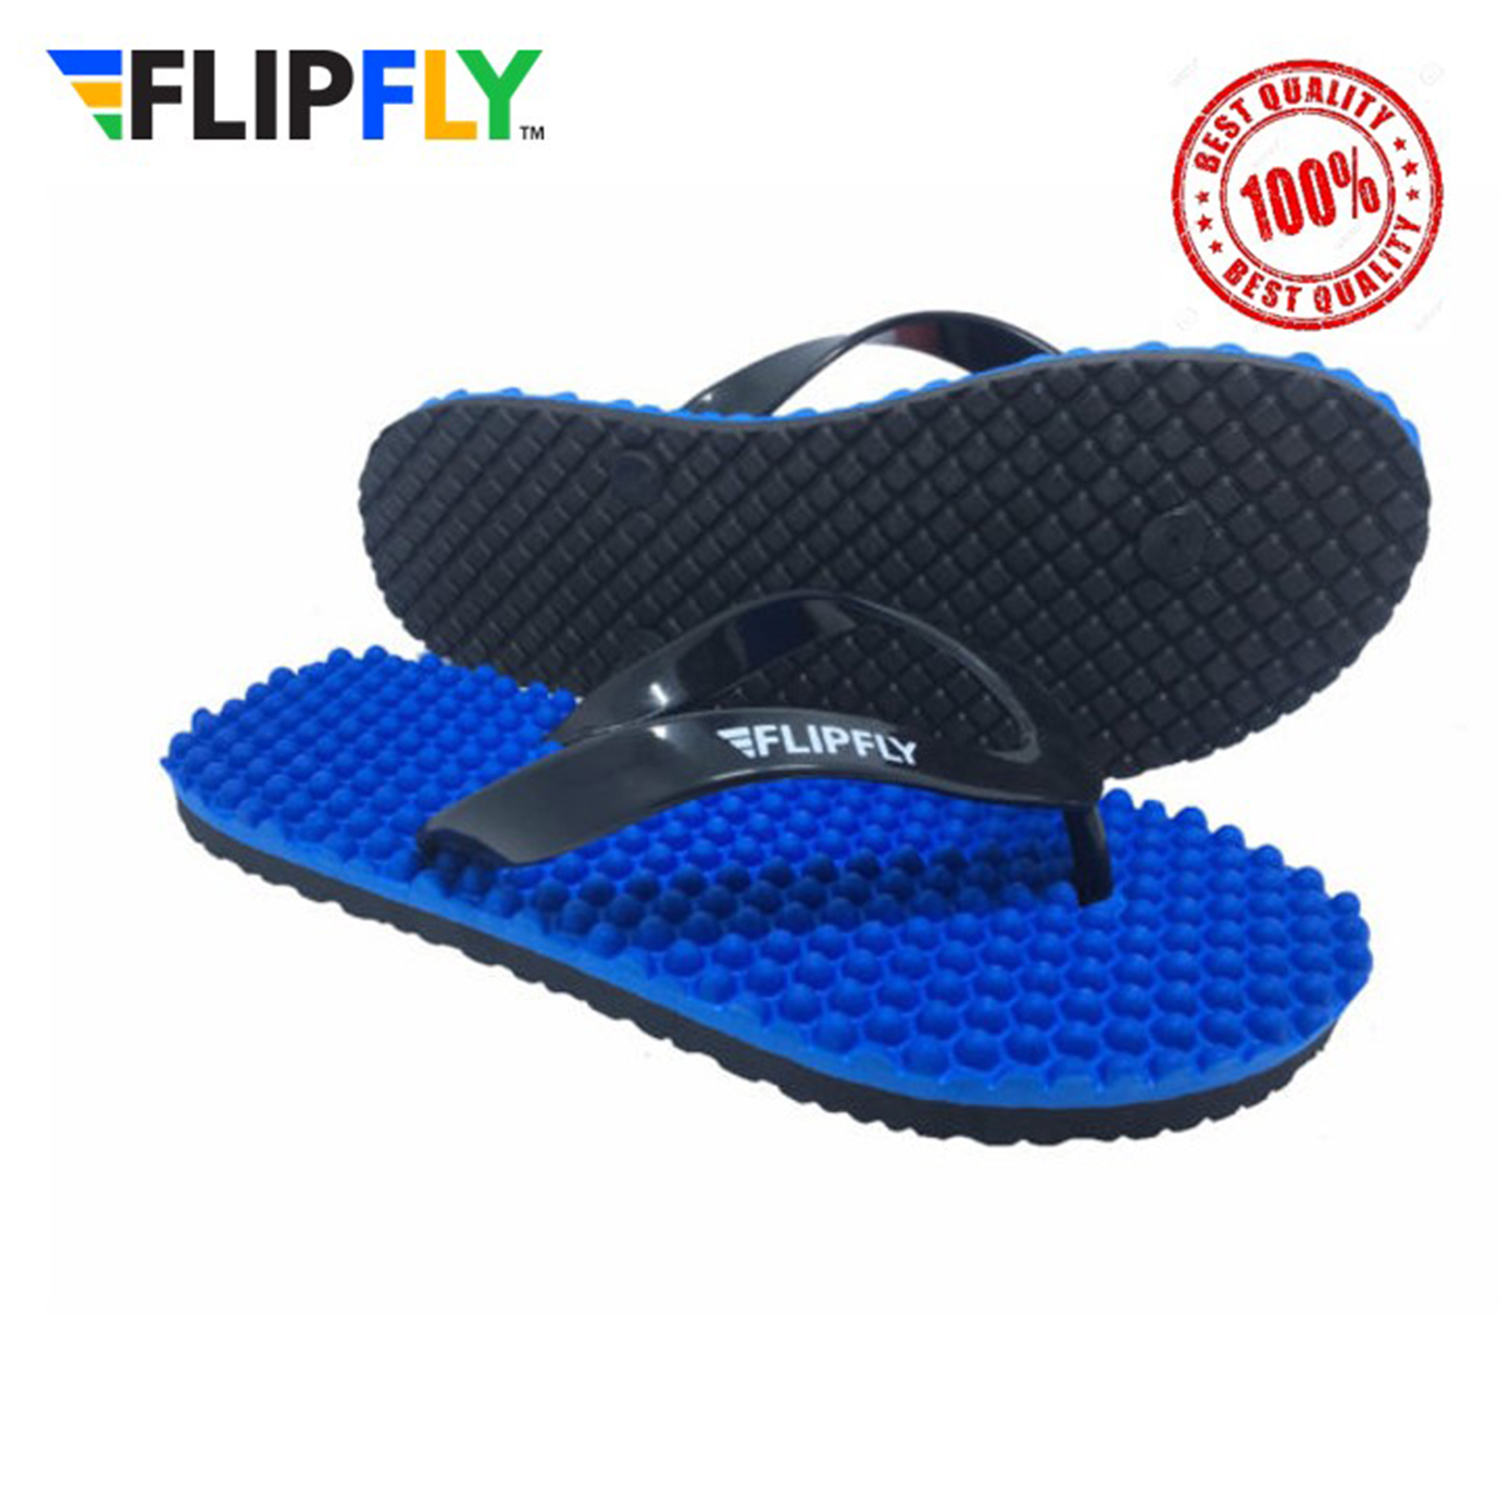 FlipFly Foot Reflexology AntiSlip Slipper